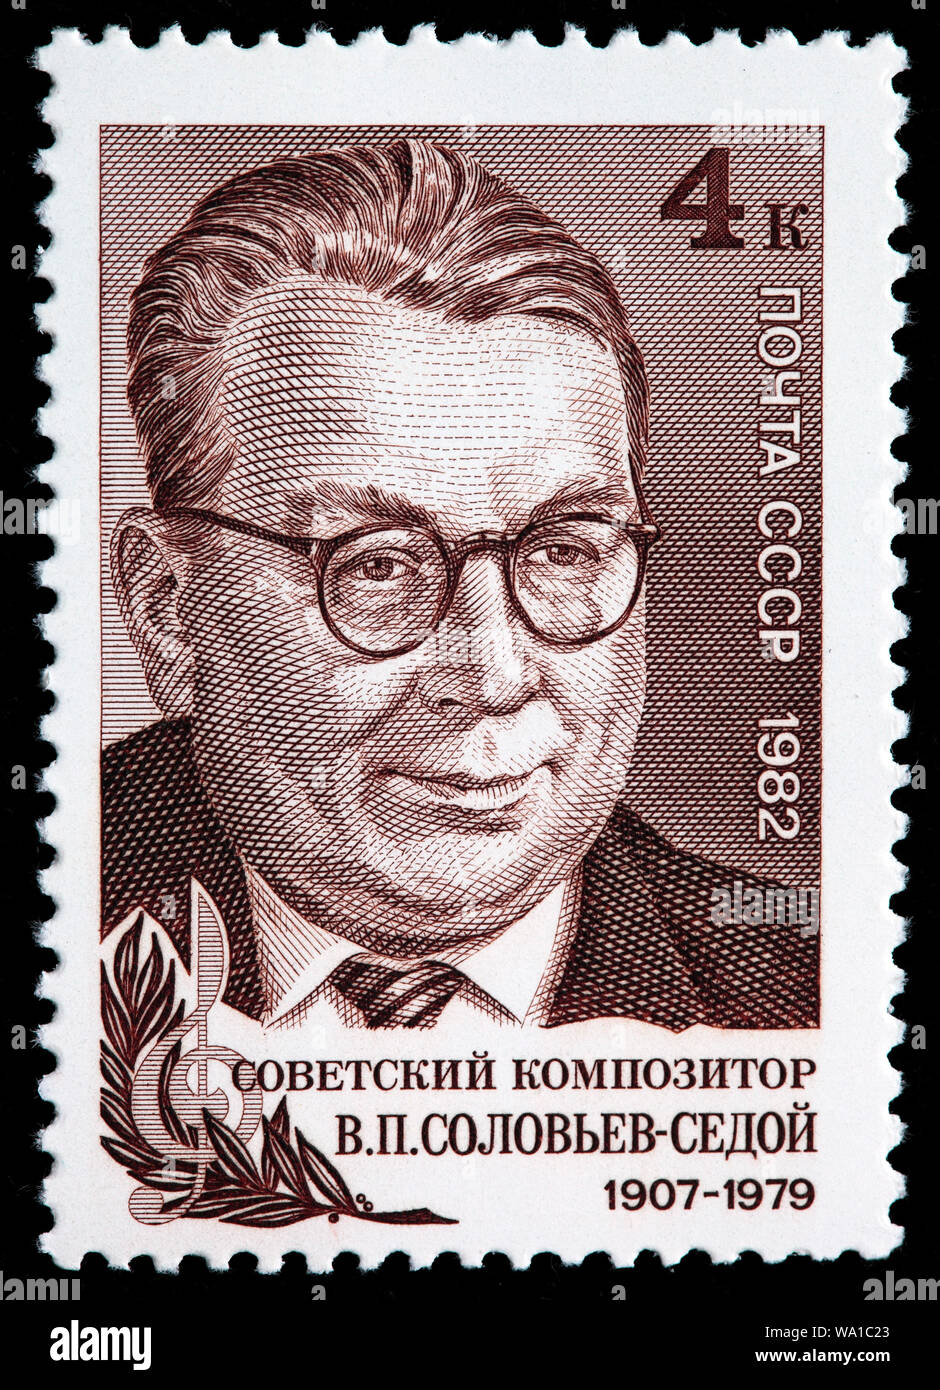 Vasily Solovyov-Sedoi (1907-1979), il compositore russo, francobollo, Russia, URSS, 1982 Foto Stock